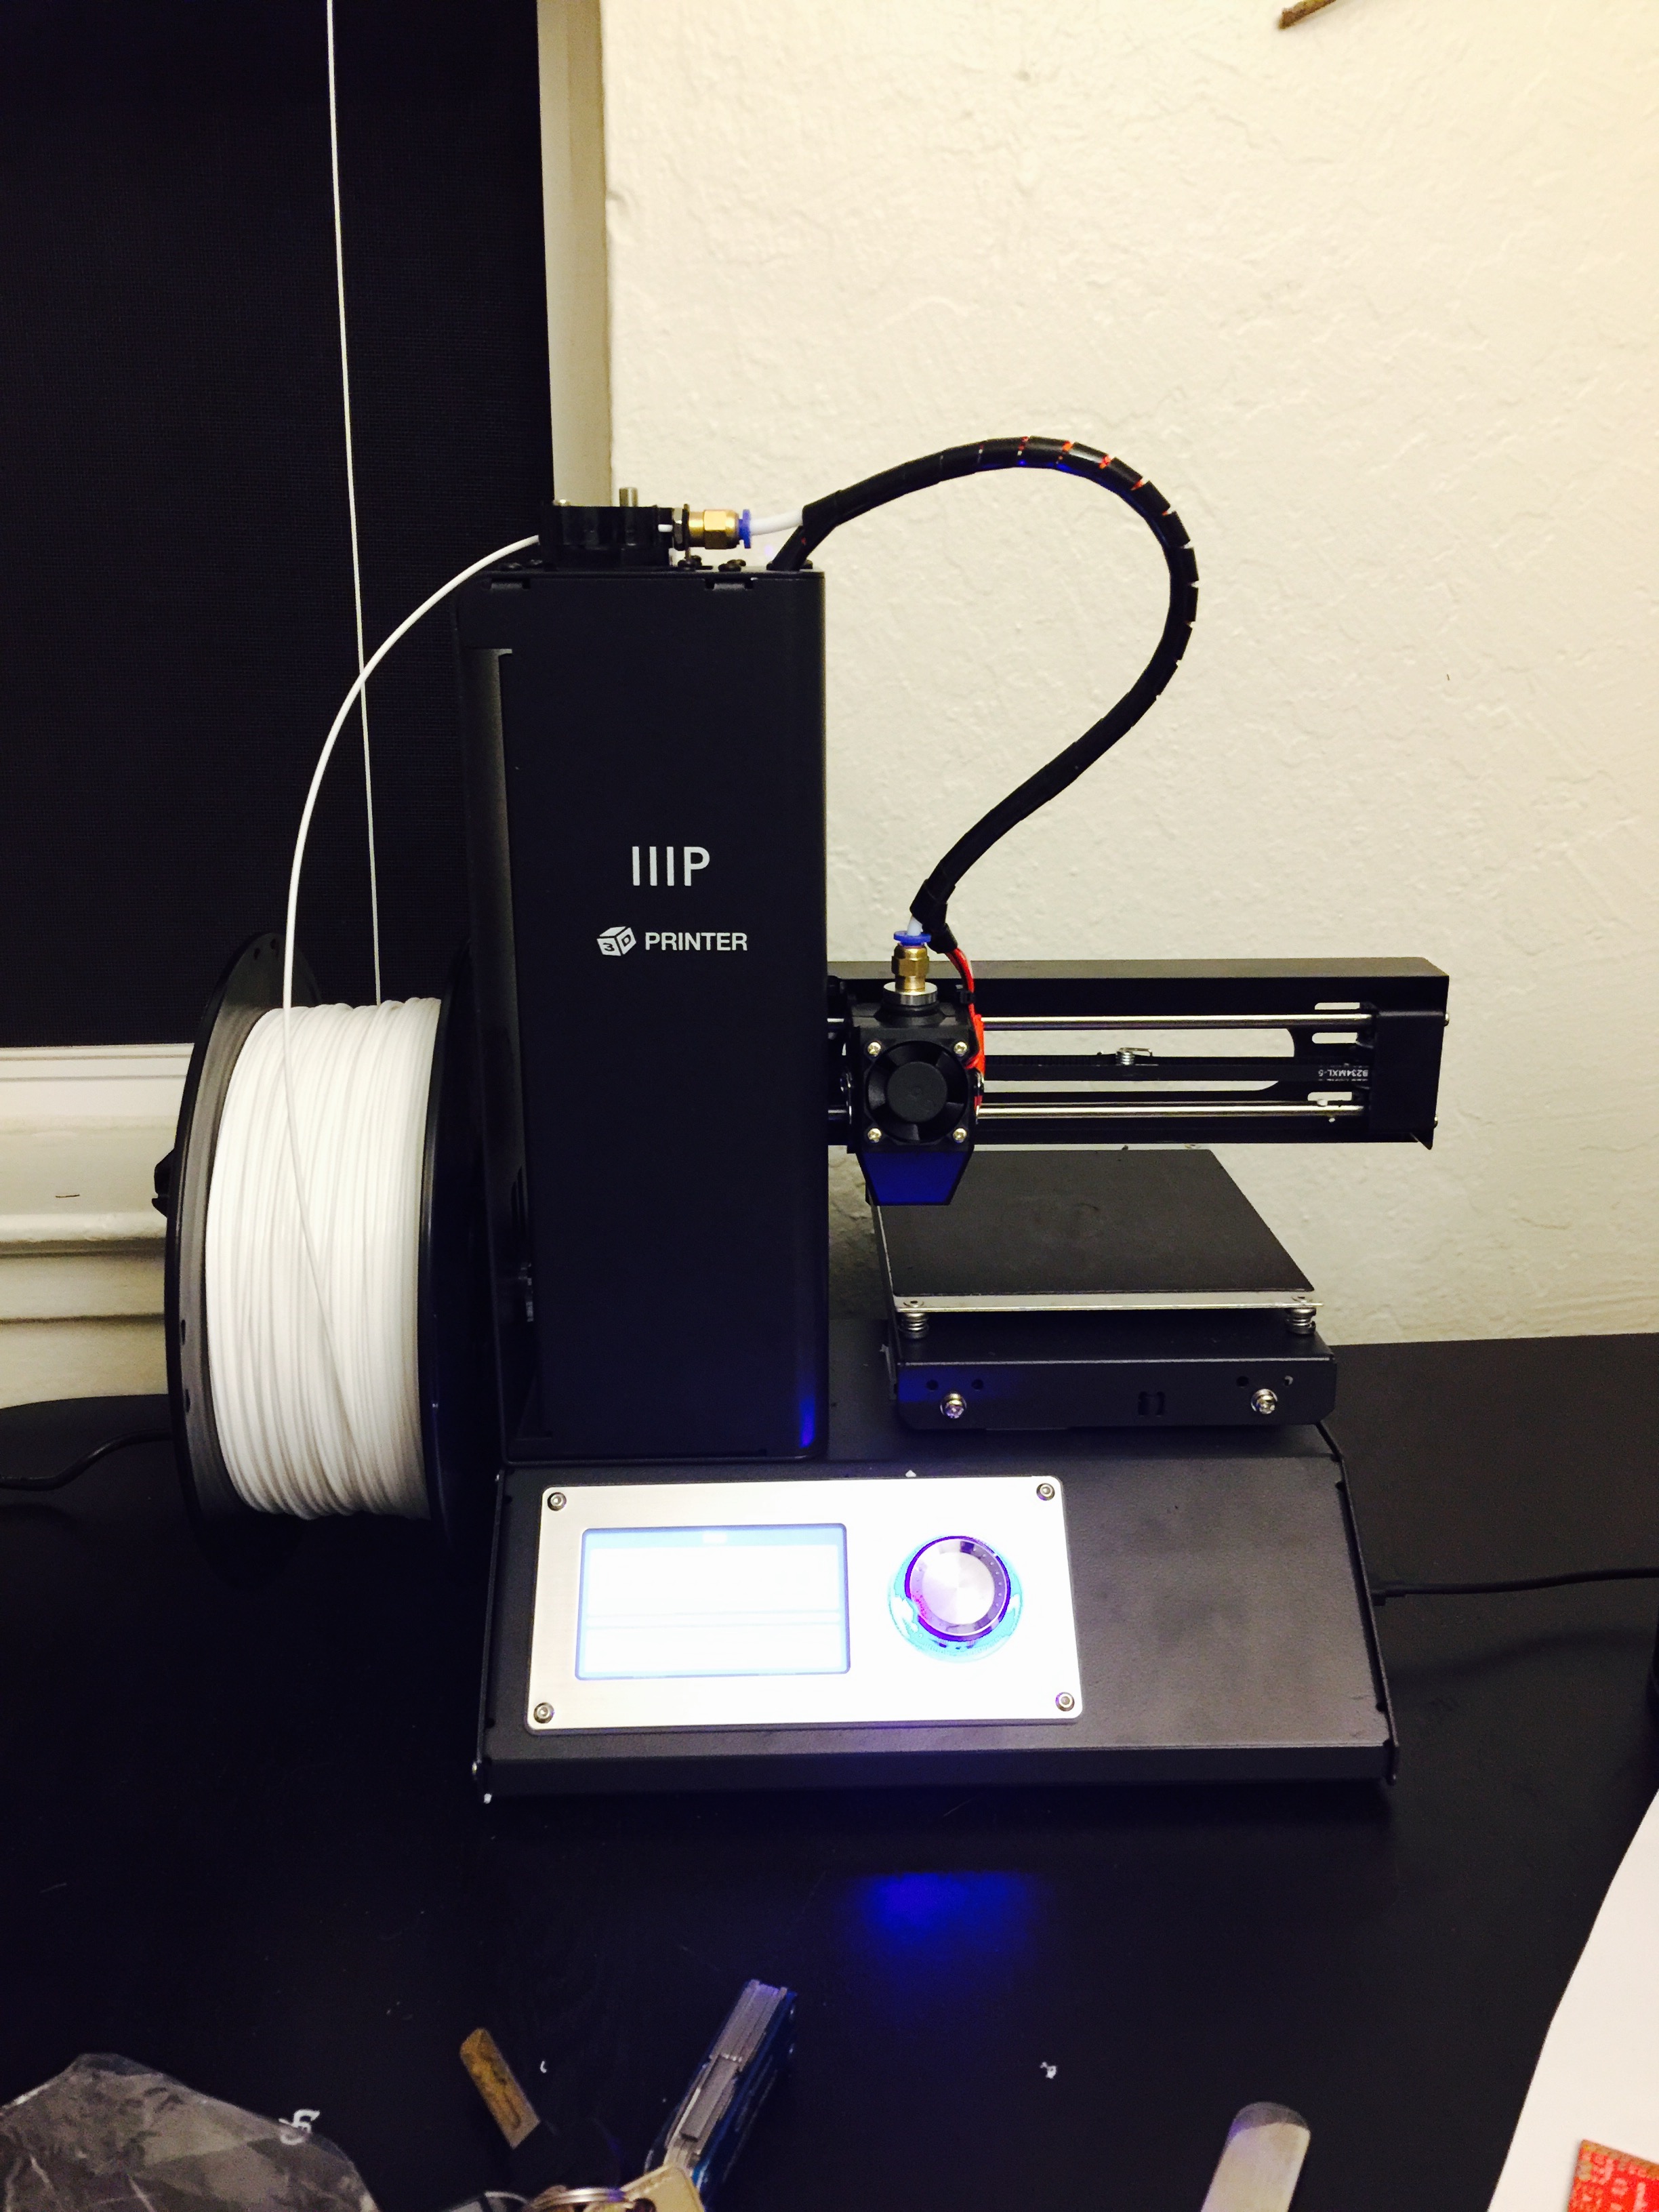 So I Impulse Bought a 3D Printer...